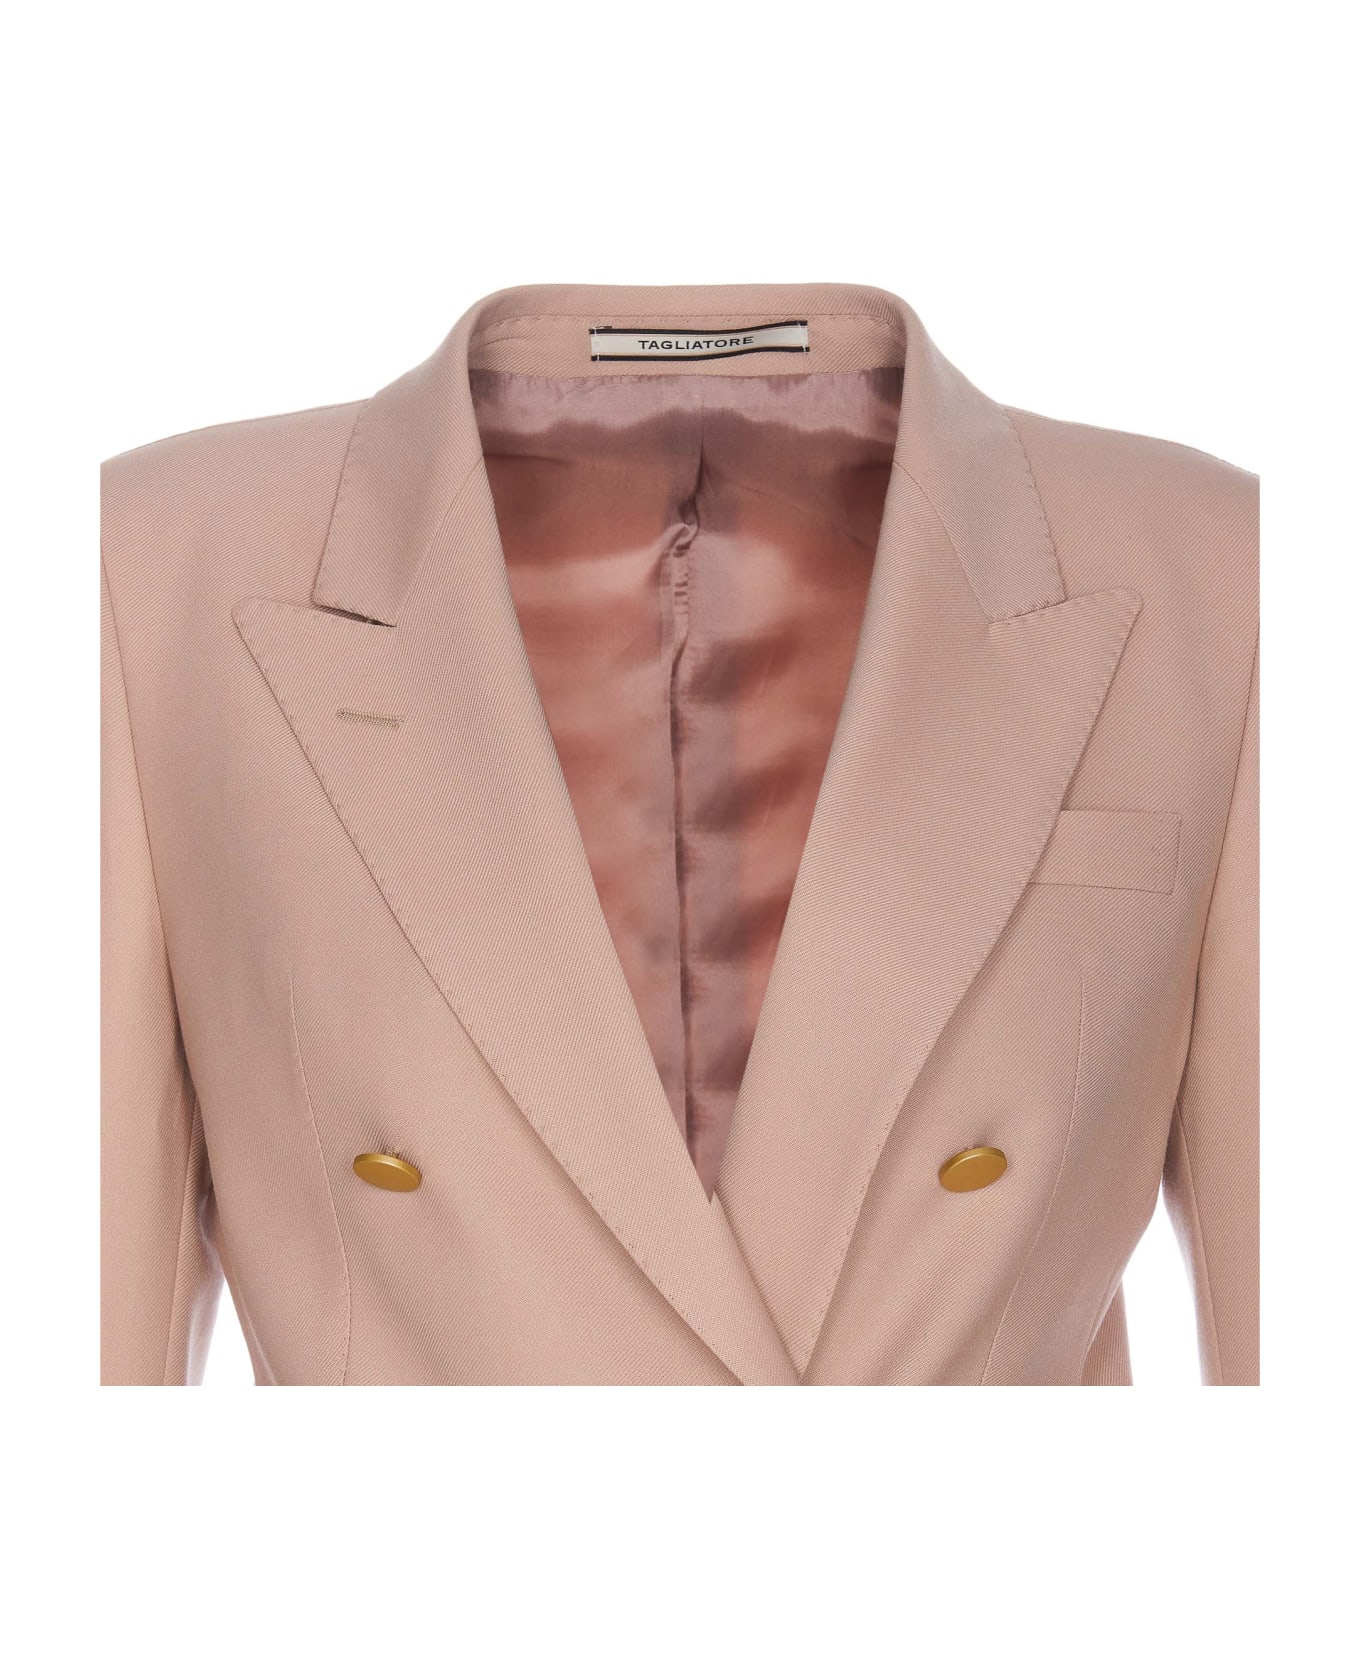 Tagliatore T-parigi Suit - Pink